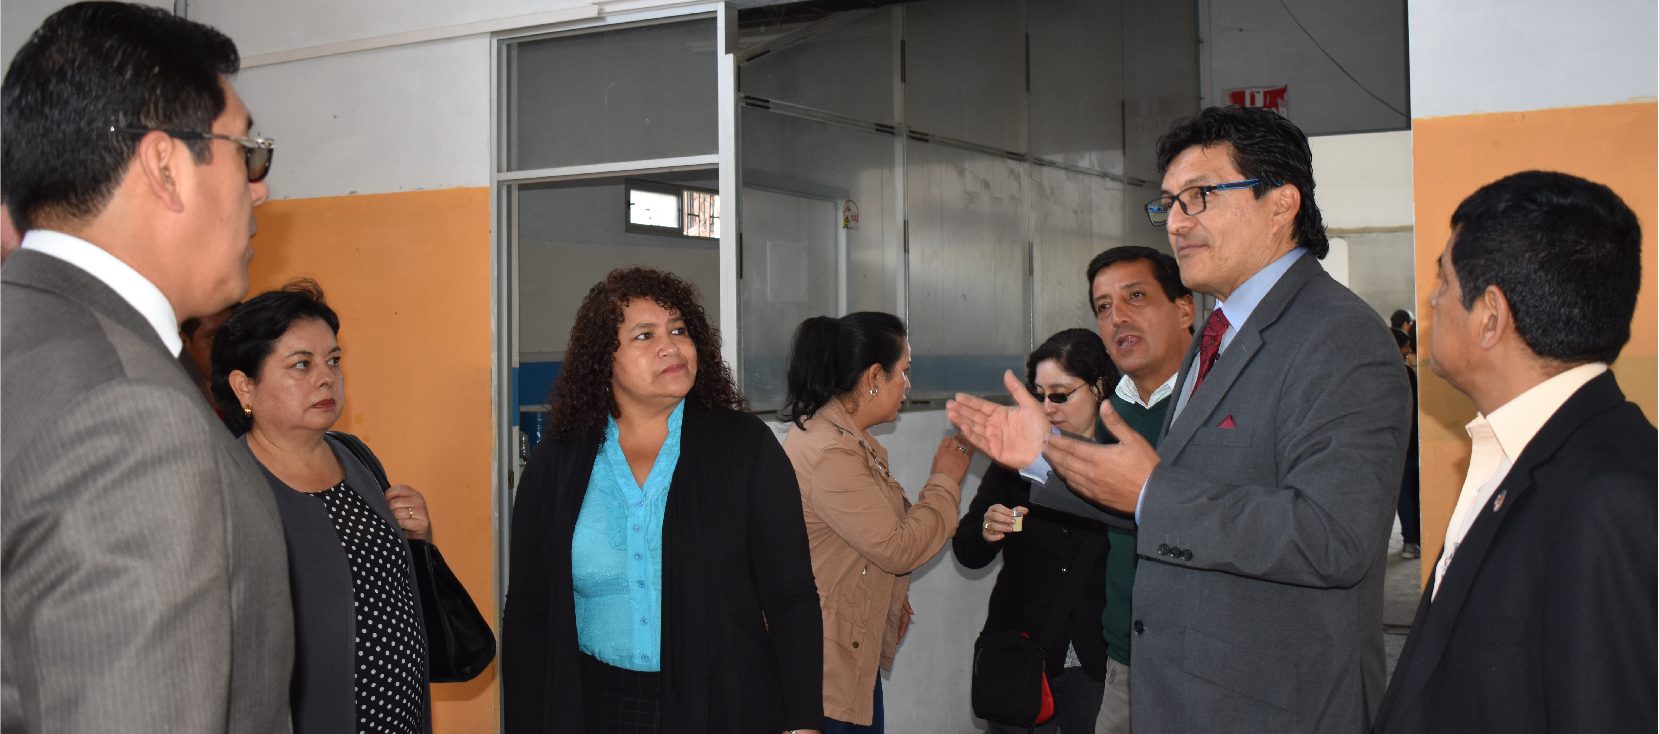 Unach recibió un inmueble en comodato por el GADM de Riobamba